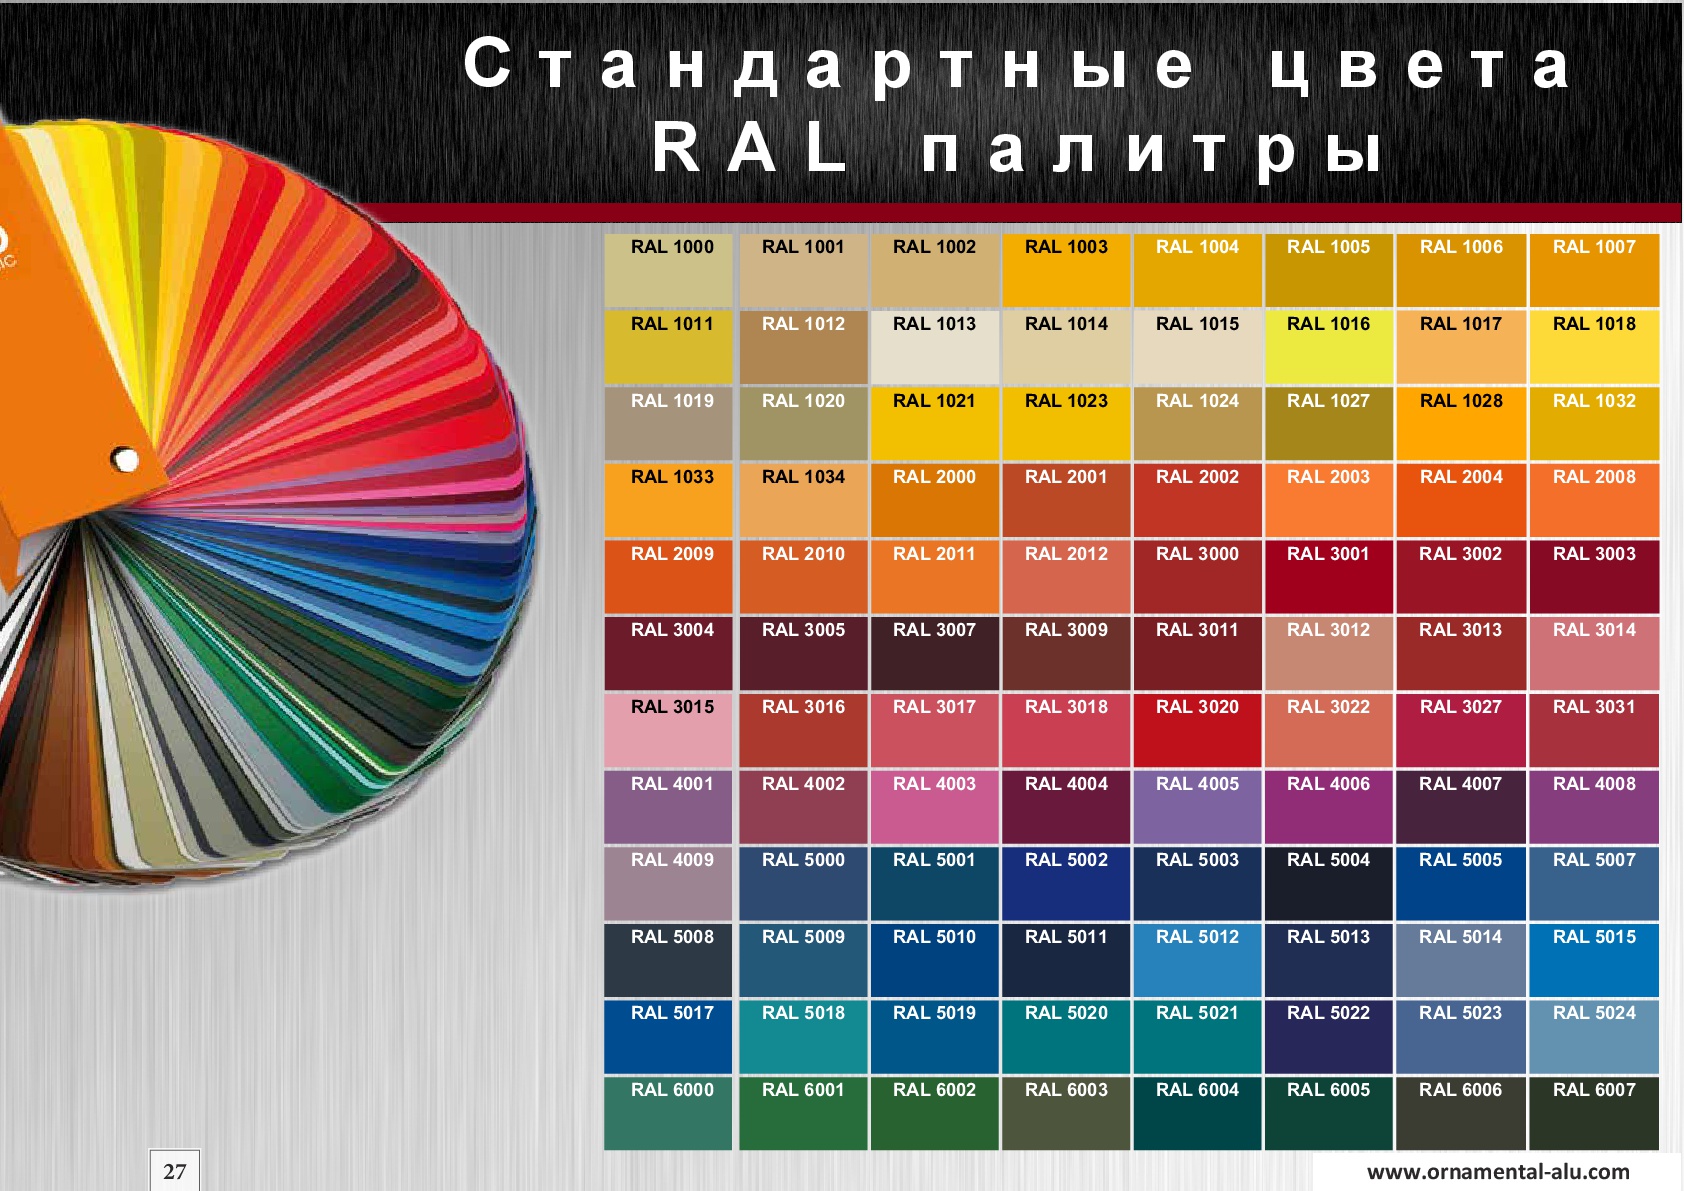 Бесплатный каталог цветов. Таблица оттенков RAL. Оттенки рал палитра. Цветовая палитра RAL 7027. Цветовая раскладка рал.